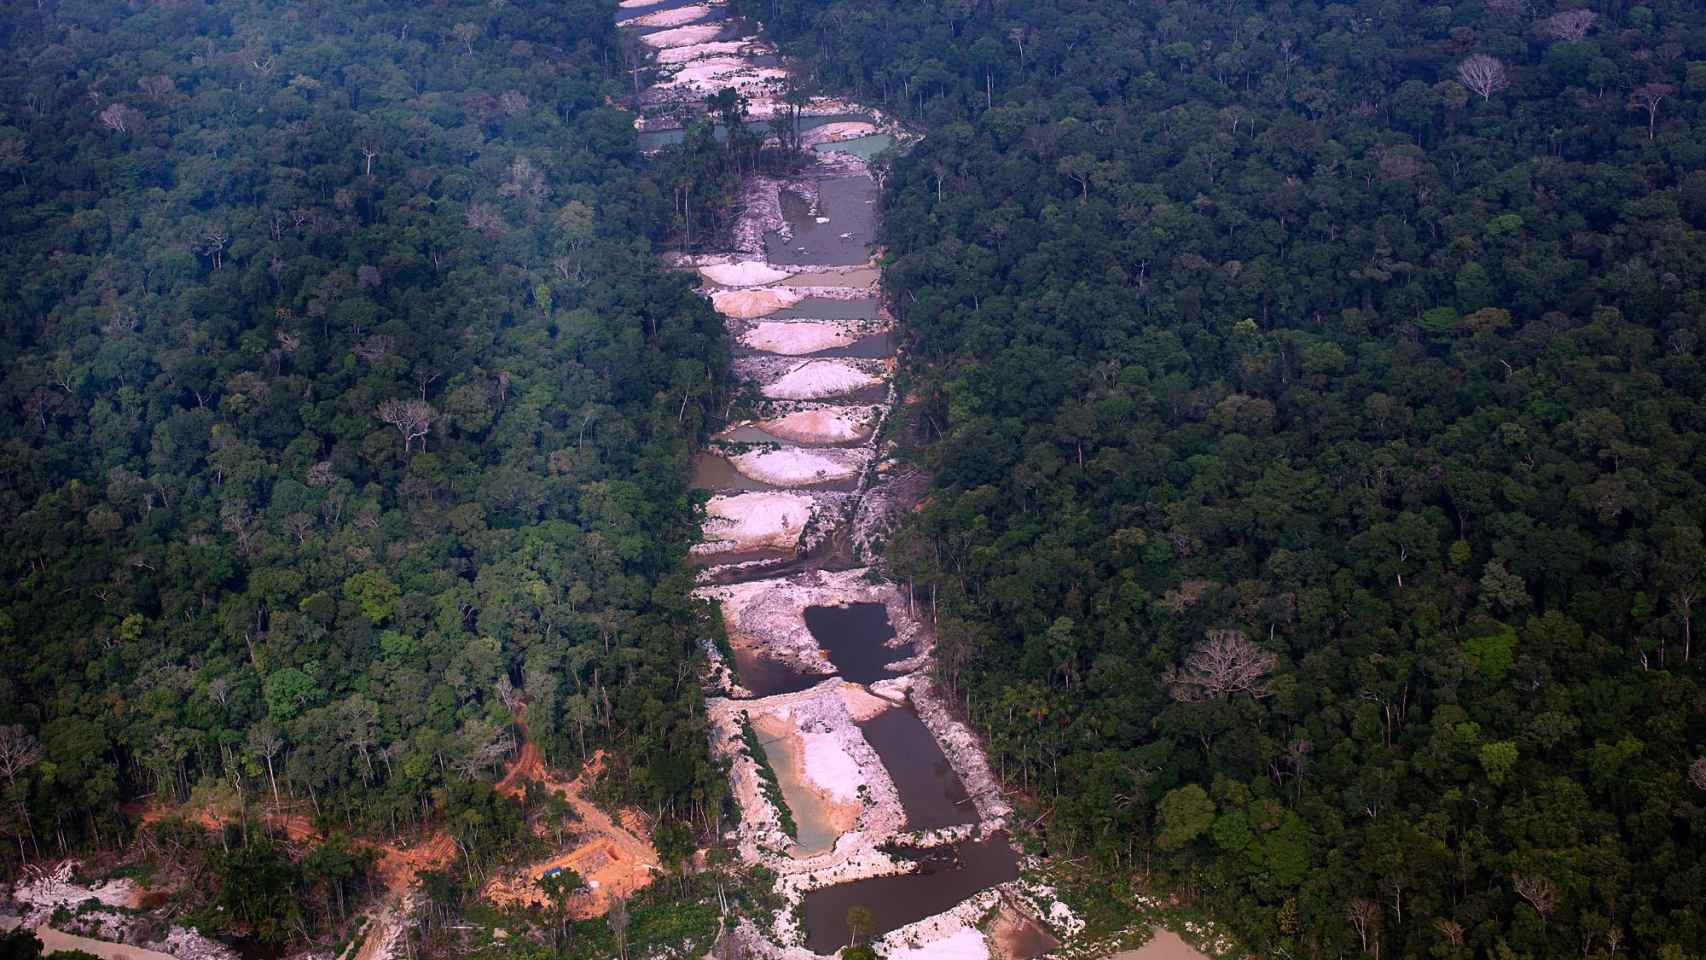 Madereros, garimpeiros y las grandes explotaciones del agronegocio son las principales amenazas de los pueblos originarios y las comunidades tradicionales de la Amazonia.